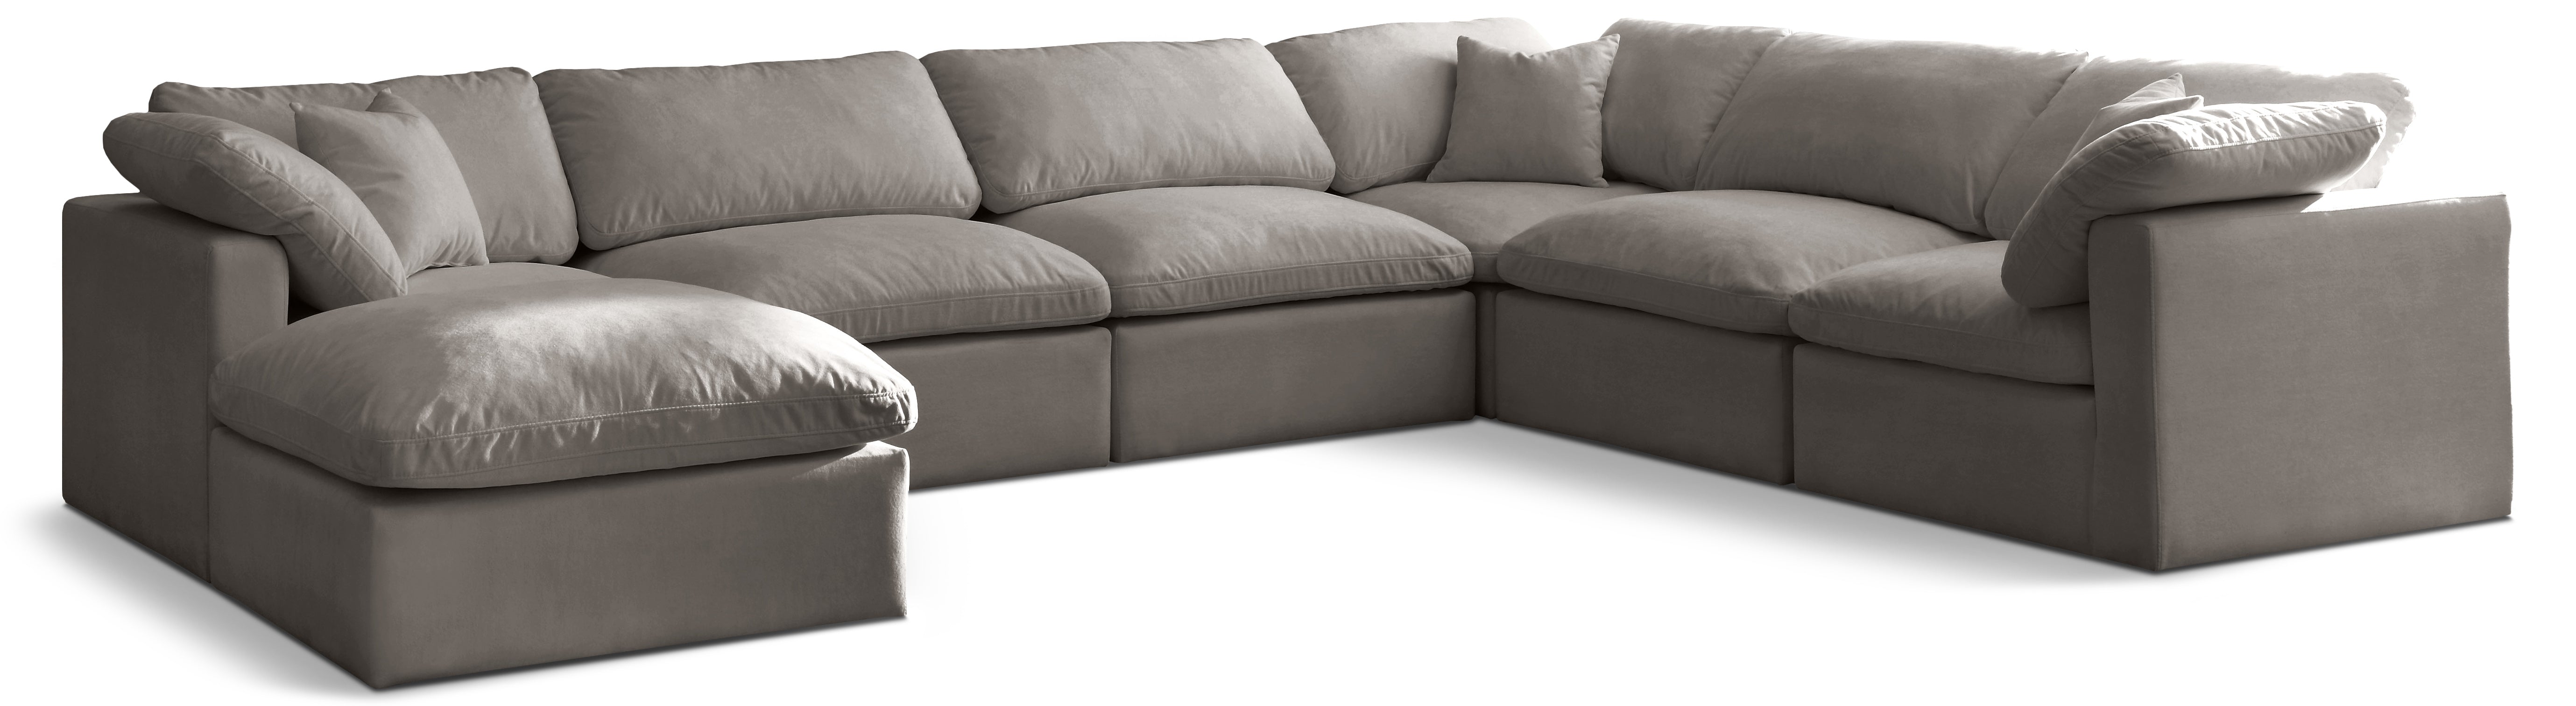 Plush Grey Velvet Standard Comfort Modular Sectional